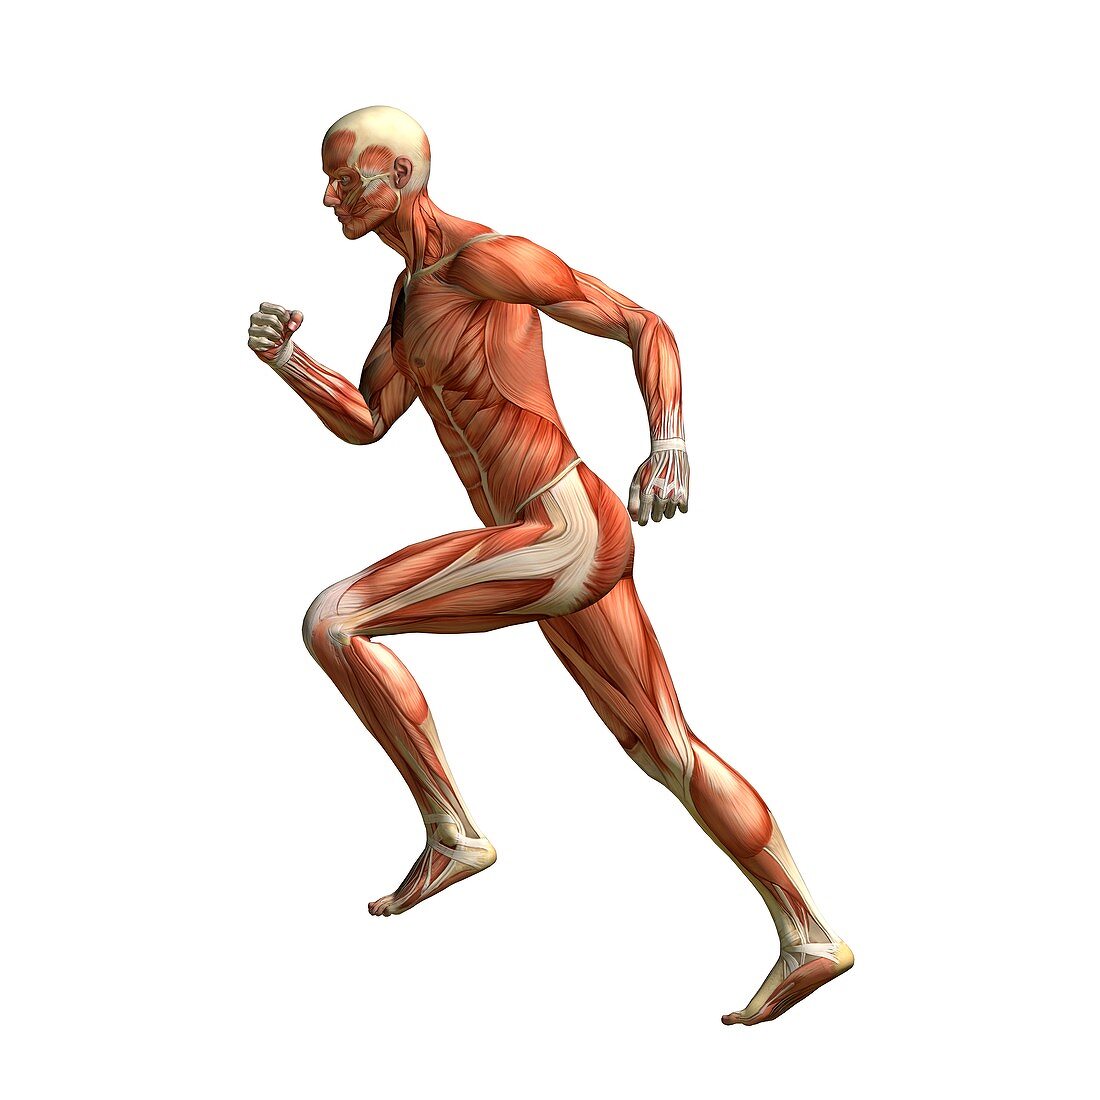 Runner's anatomy,artwork